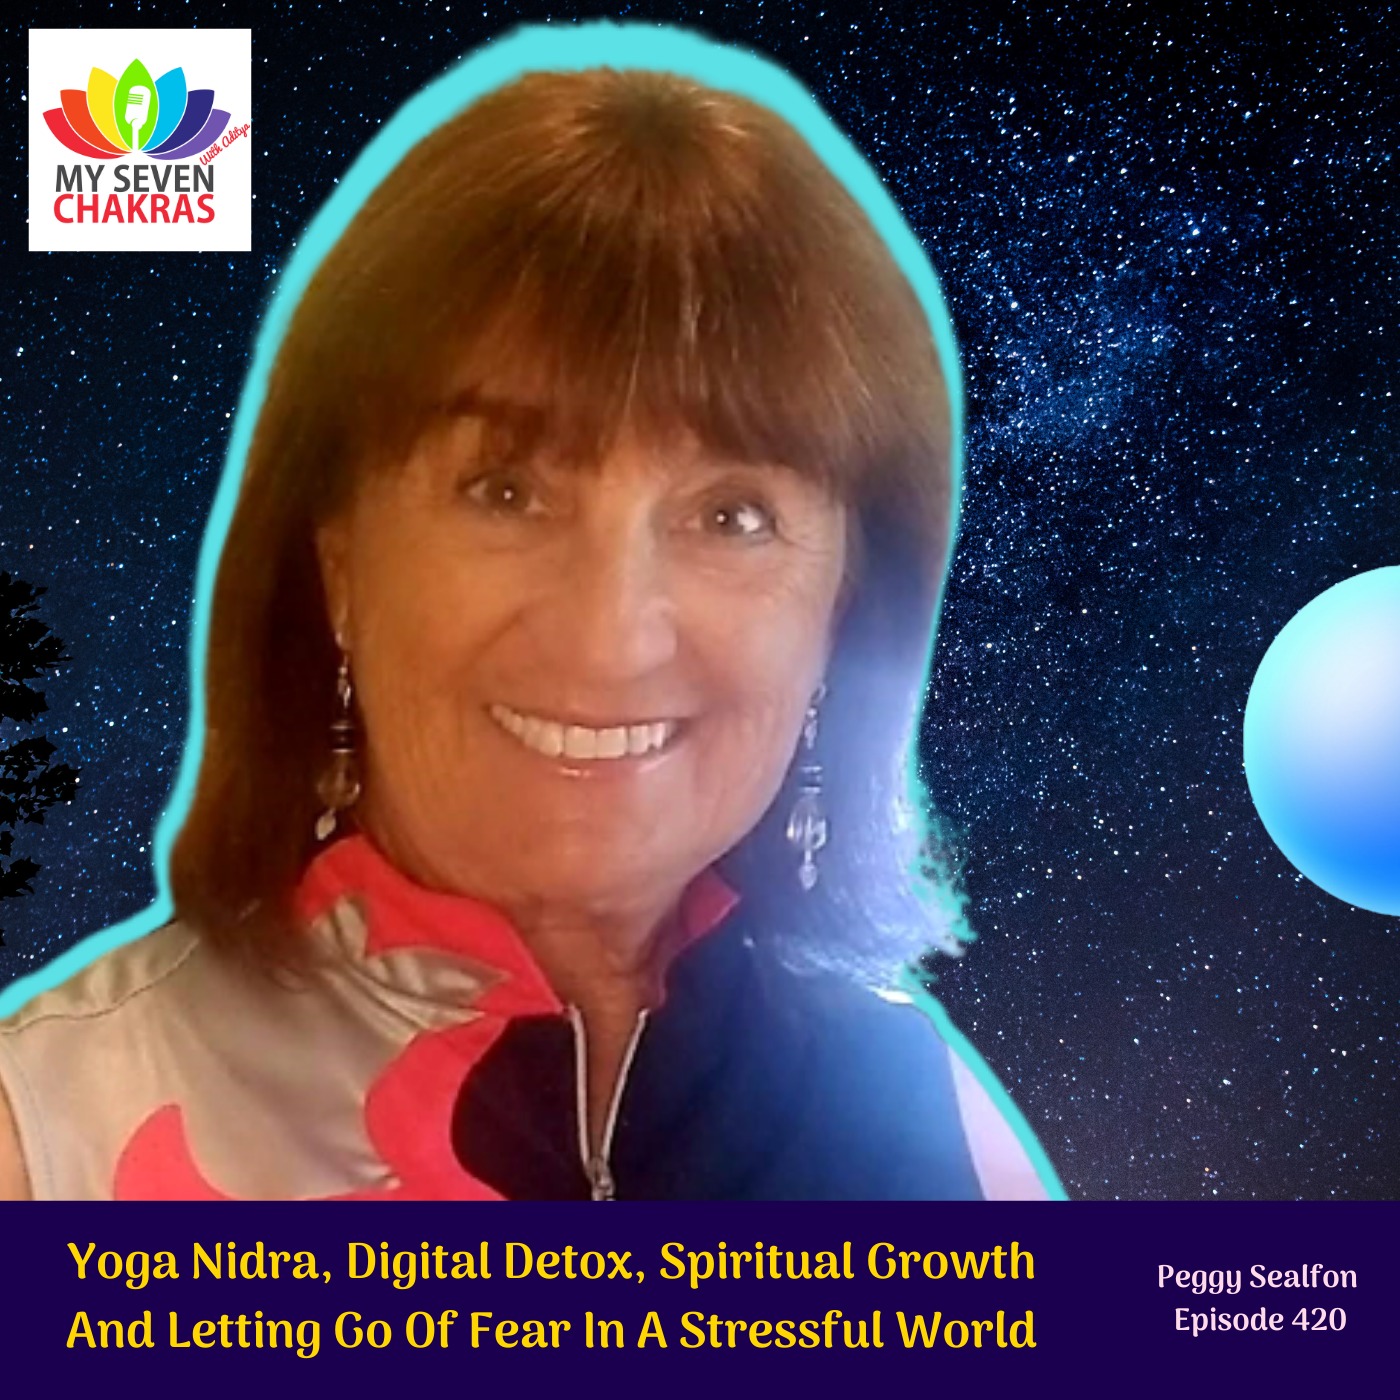 Yoga Nidra, Digital Detox, Spiritual Growth And Letting Go Of Fear In A Stressful World